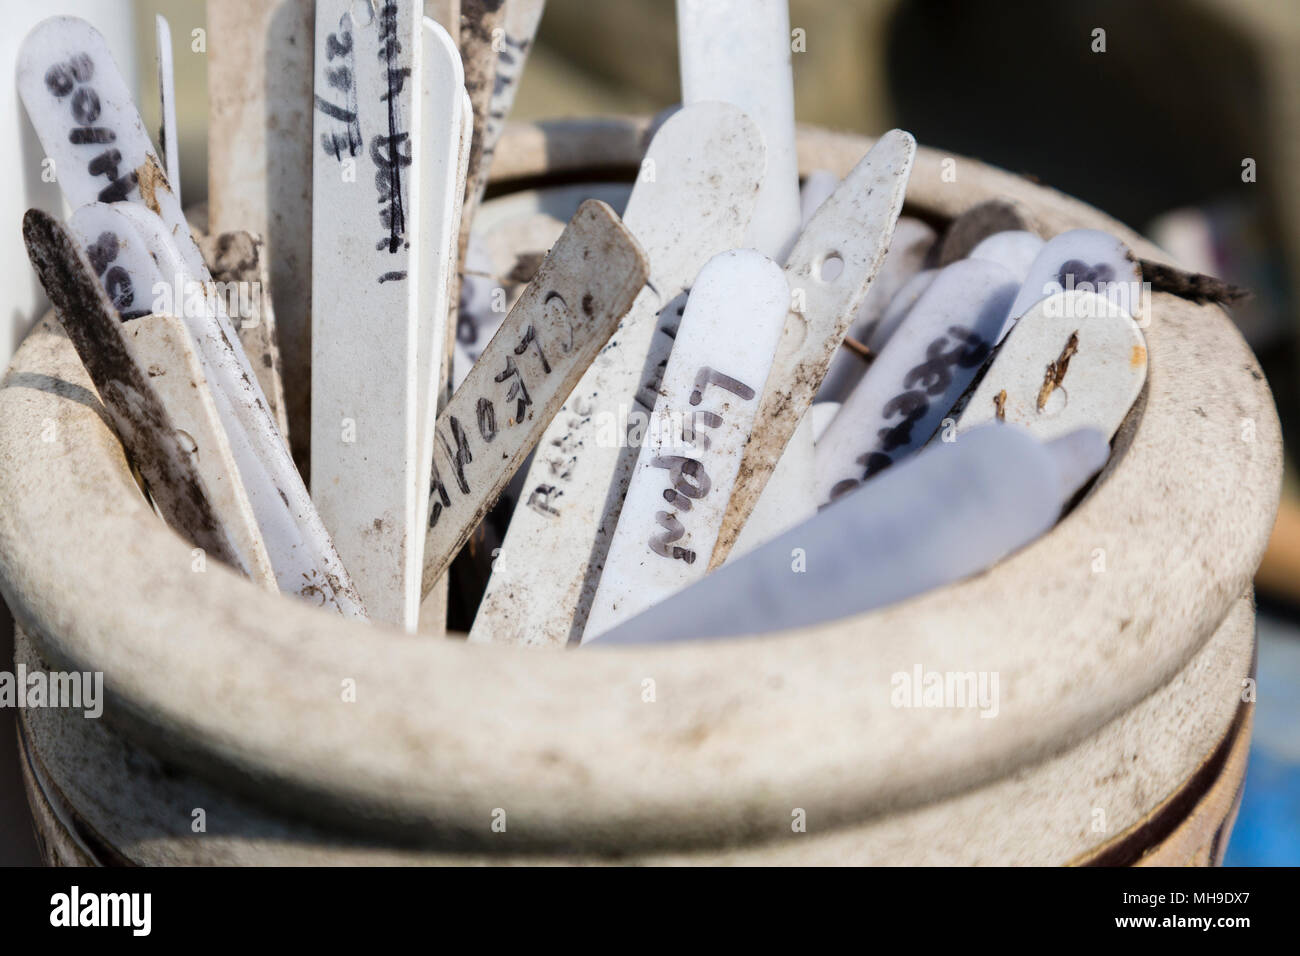 Les étiquettes des plantes et des marqueurs dans un pot en céramique Banque D'Images